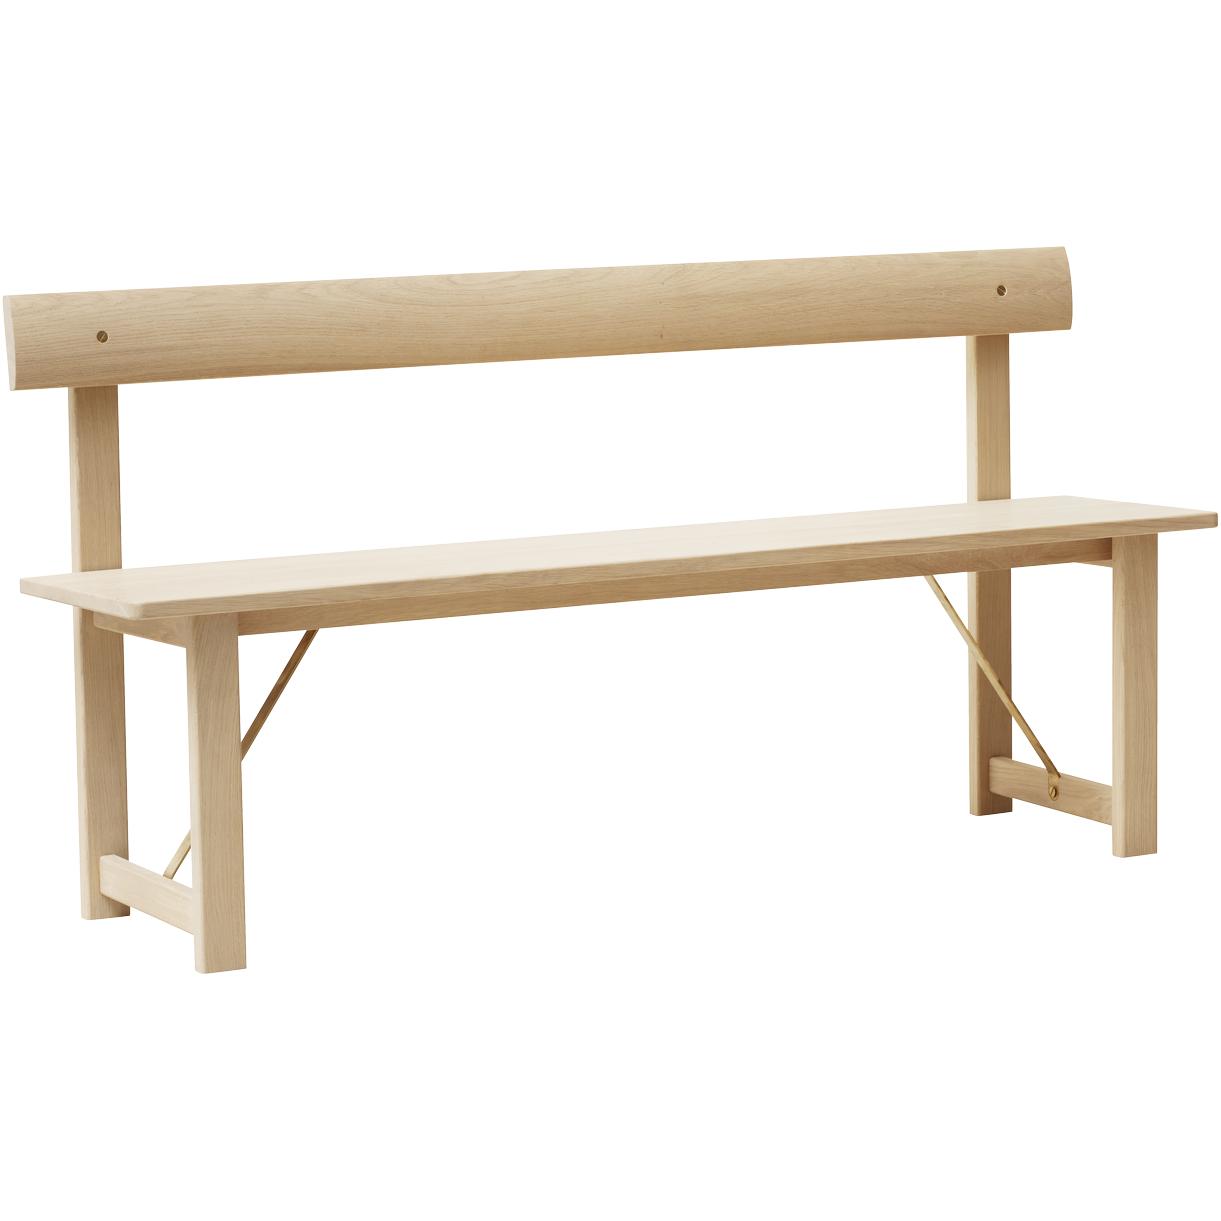 形式和精炼位置长凳155厘米。白油橡木